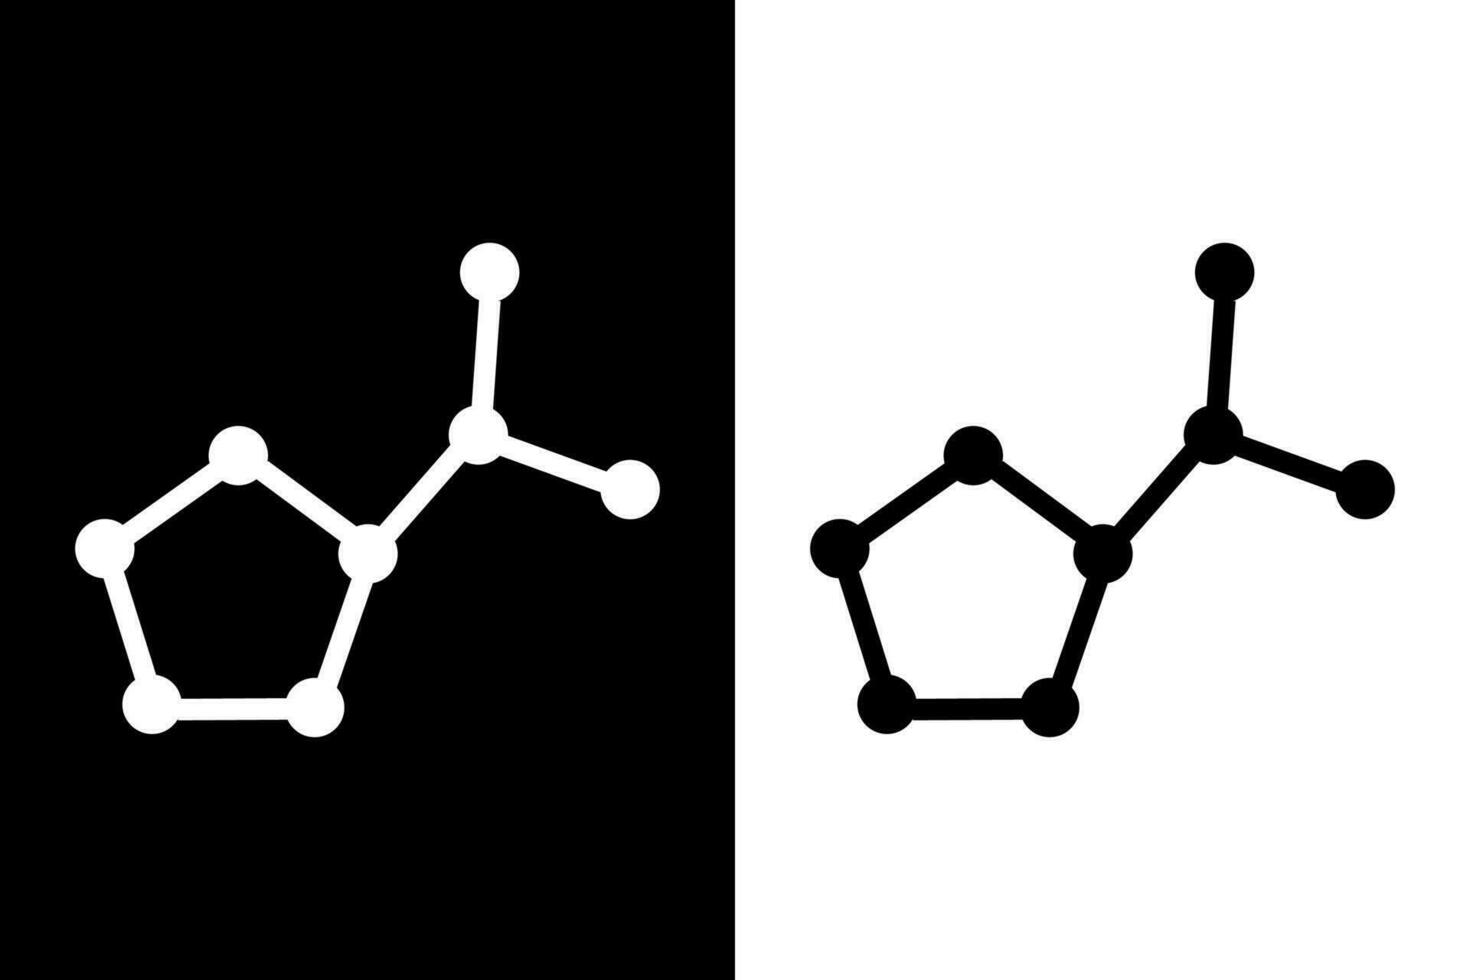 prolina aminado ácido molécula. oxígeno, carbón y nitrógeno átomos mostrado como círculos en vector ilustración.